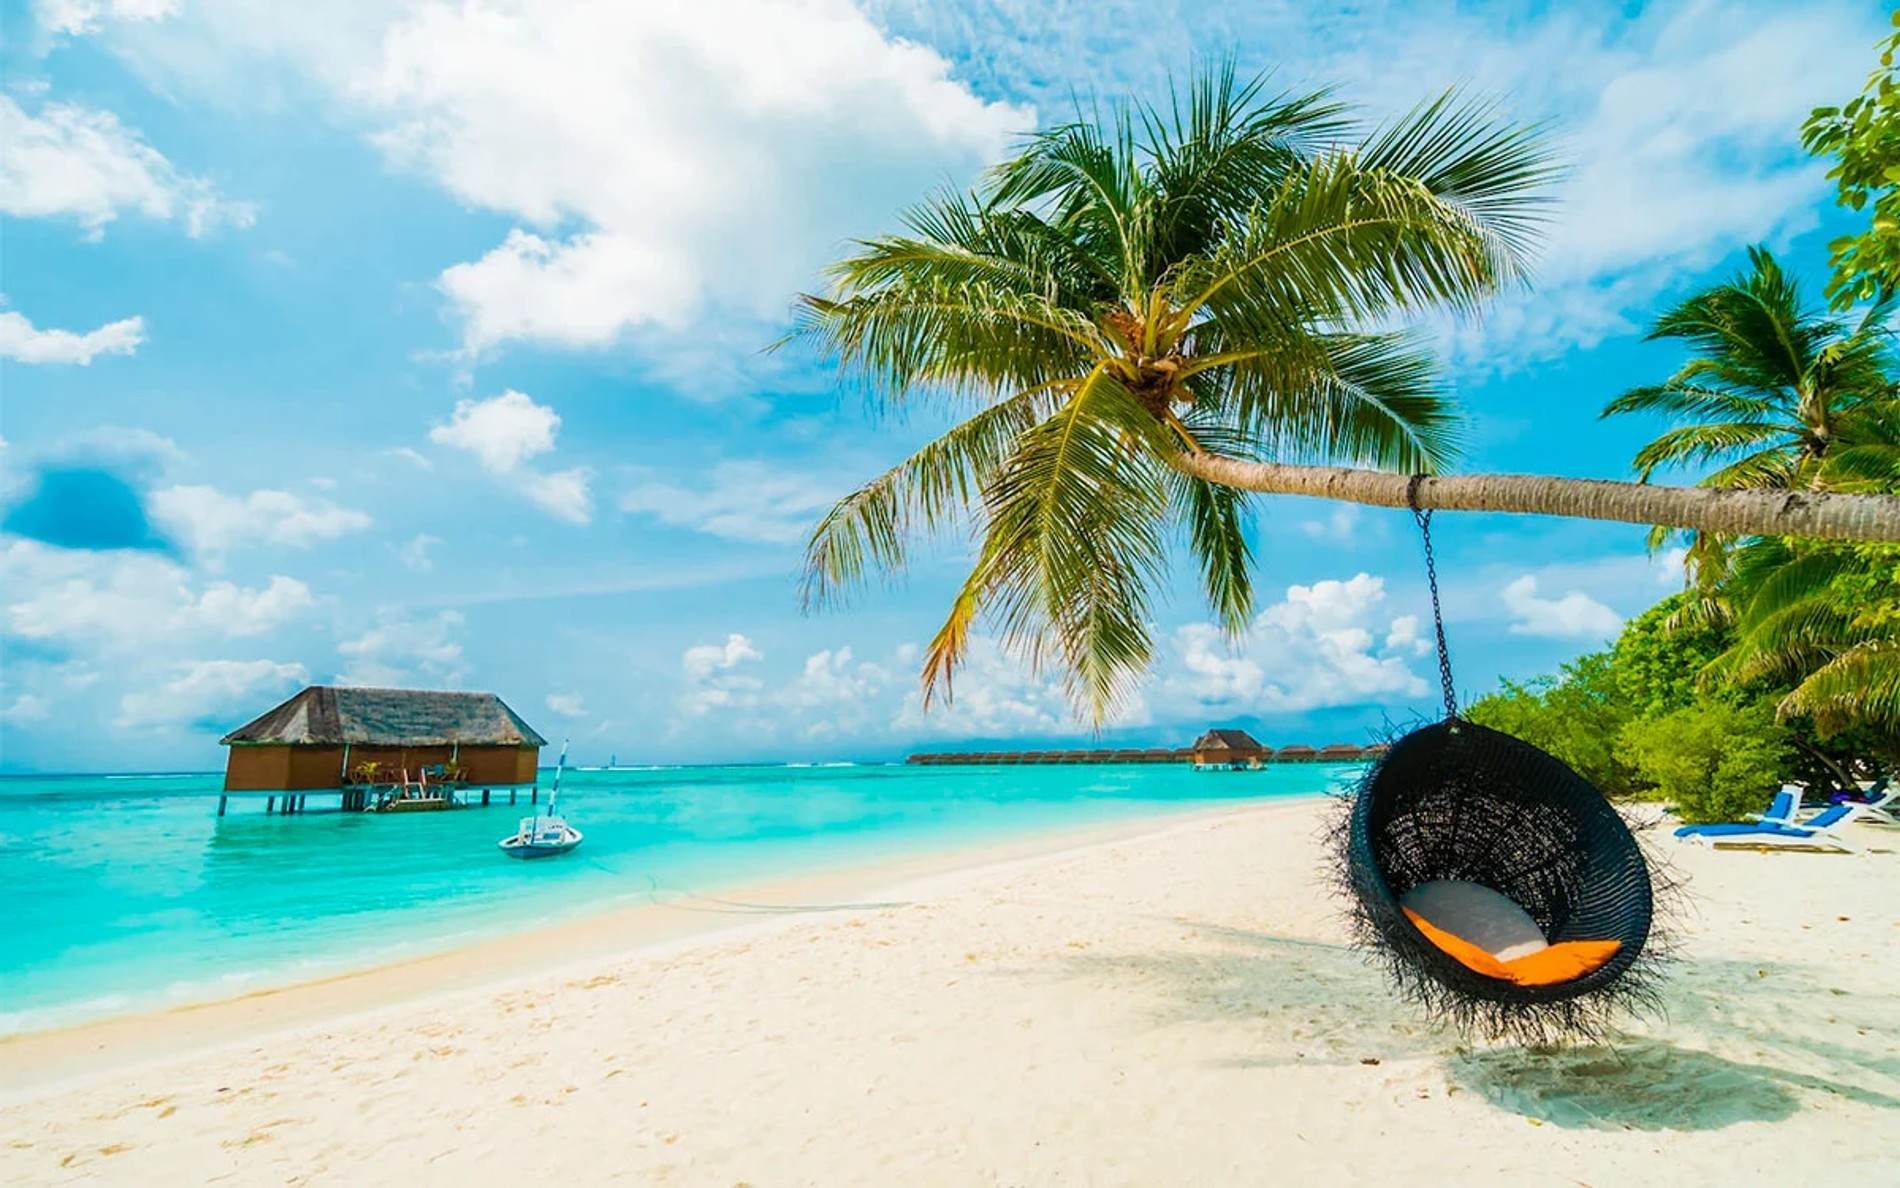 Пляж на Мальдивах
Фото: Pinterest